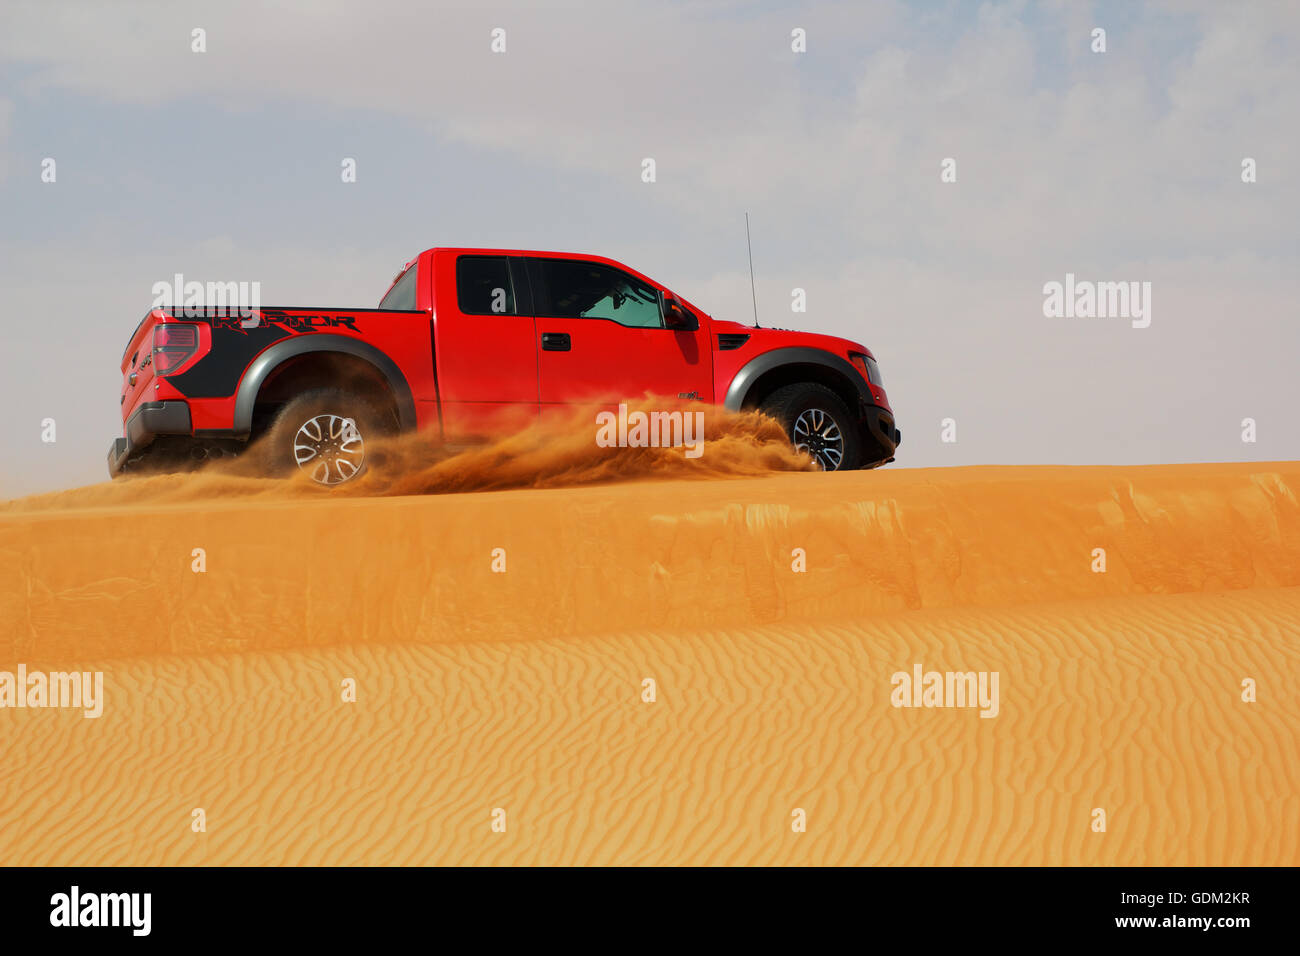 Ford SVT Raptor un pick-up dans les dunes de sable. Banque D'Images